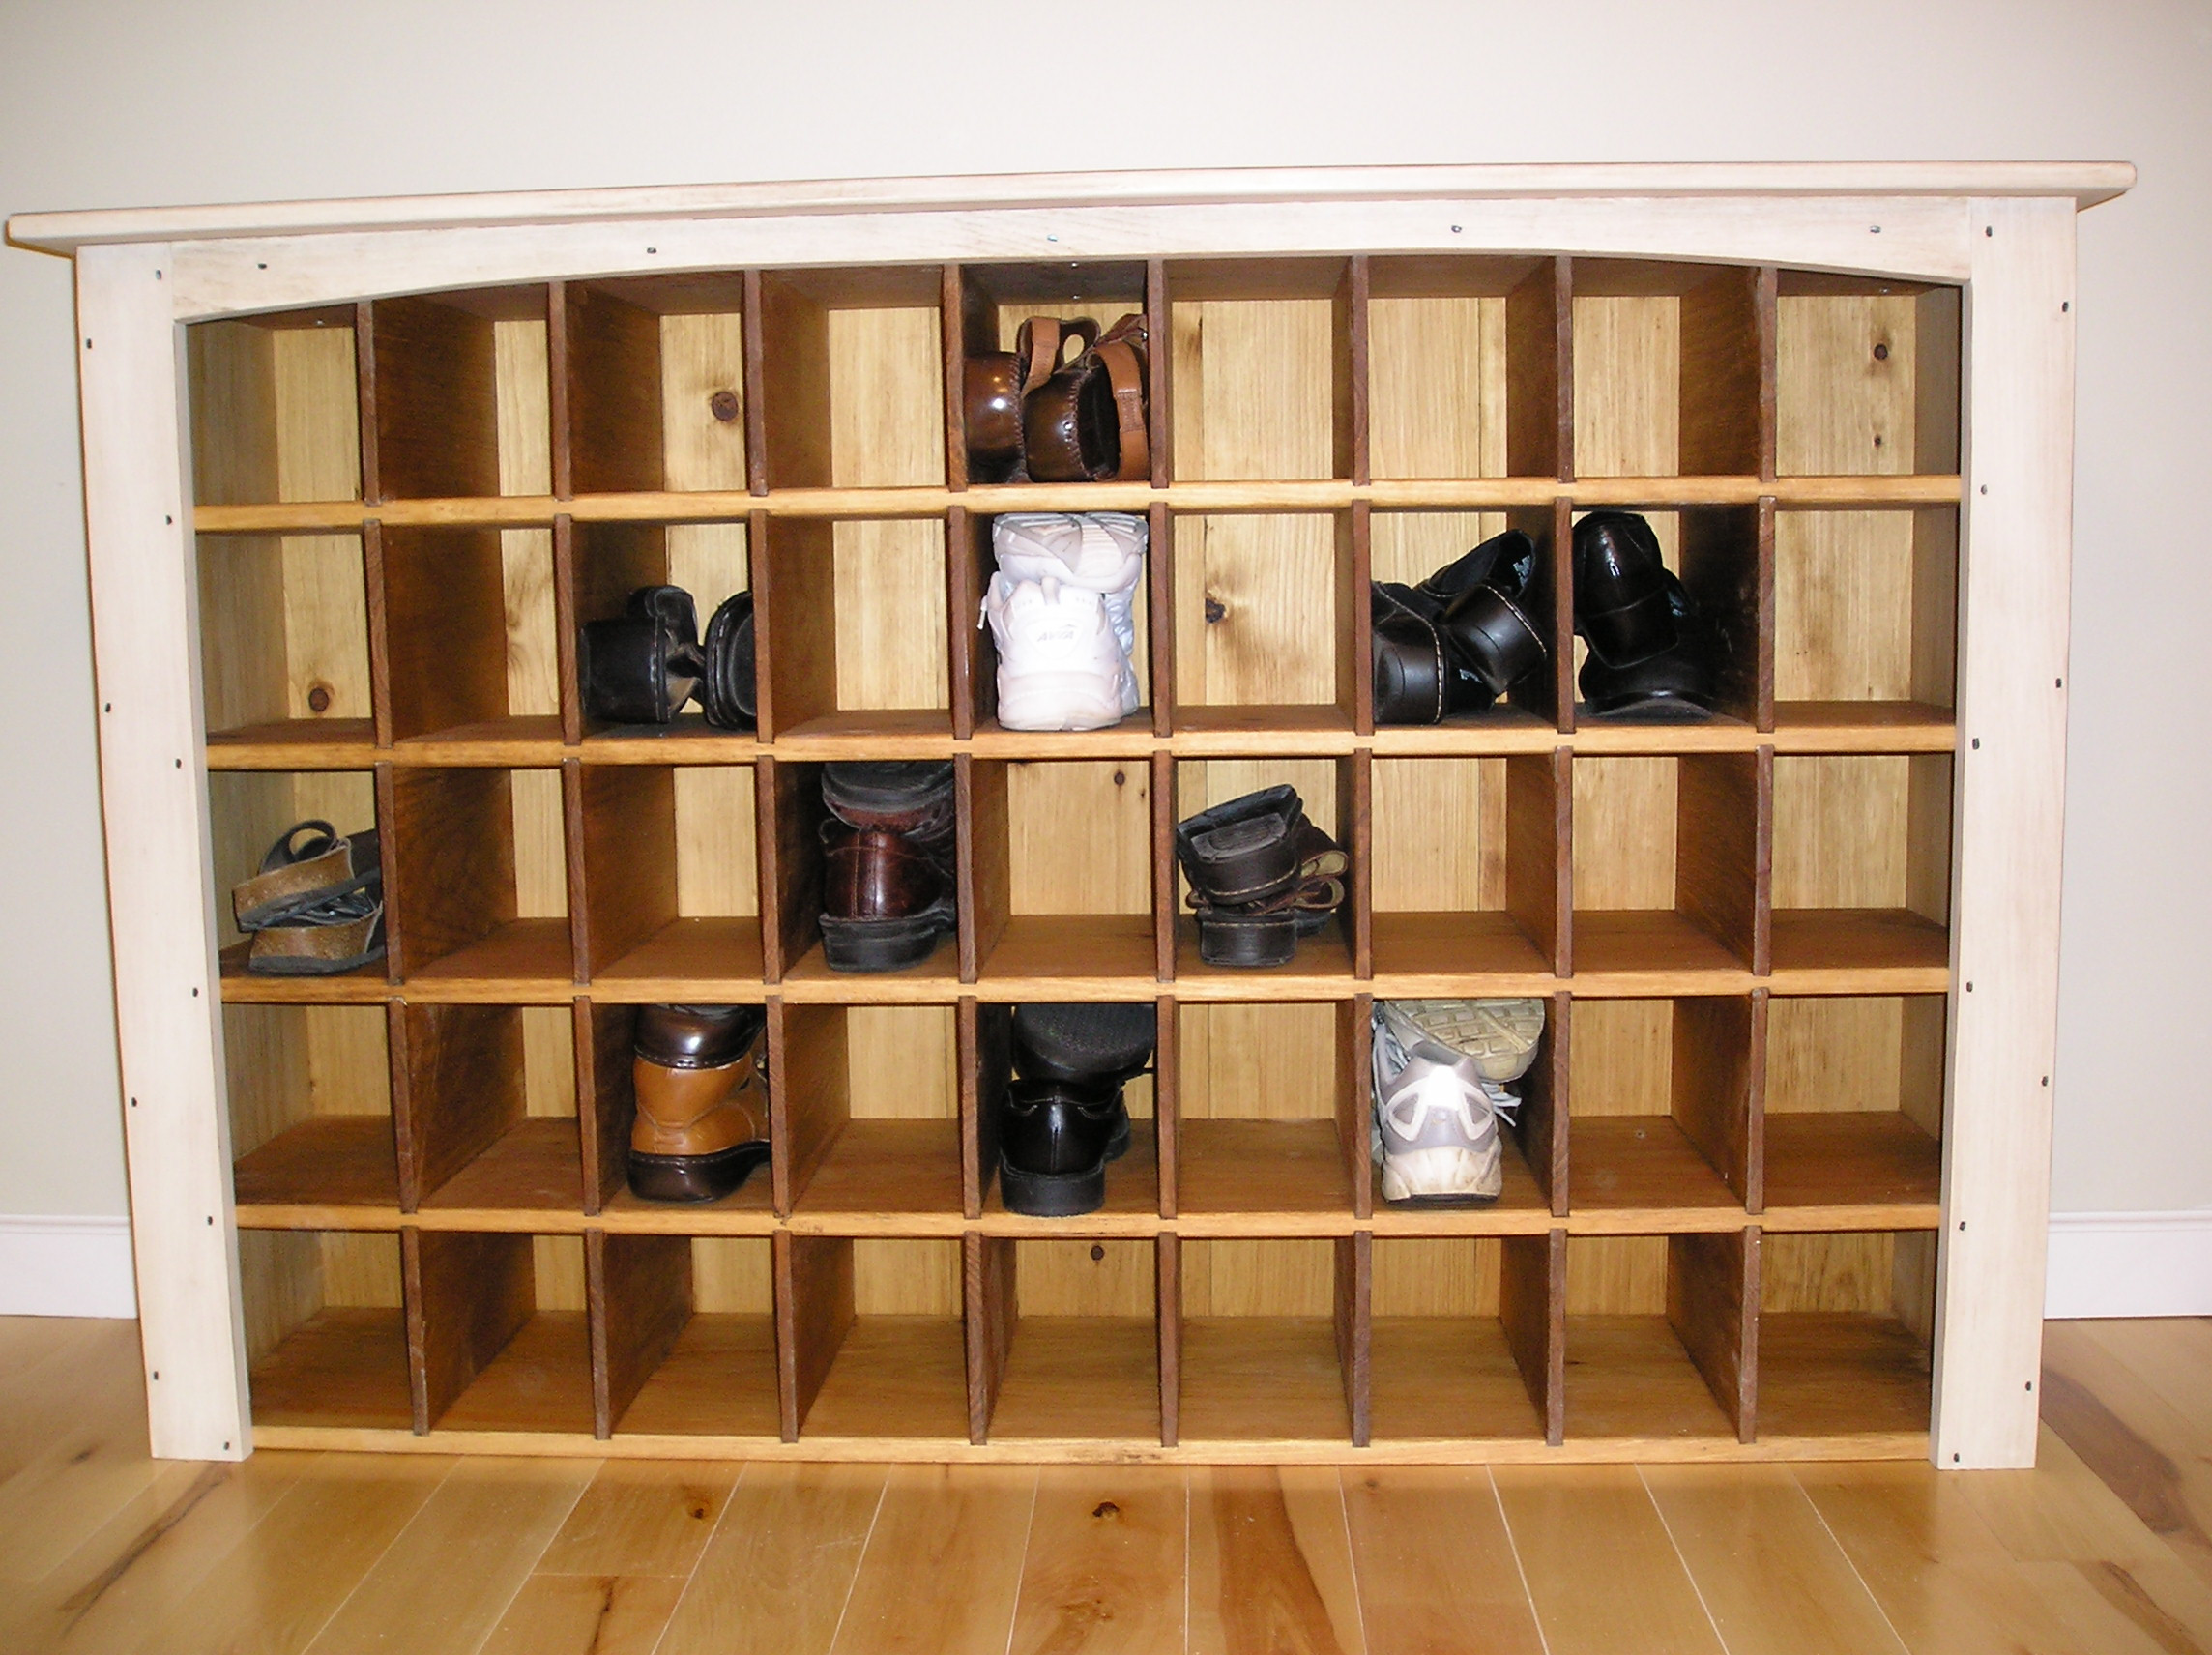 DIY Closet Shoe Organizer
 Saving space a shoe closet storage